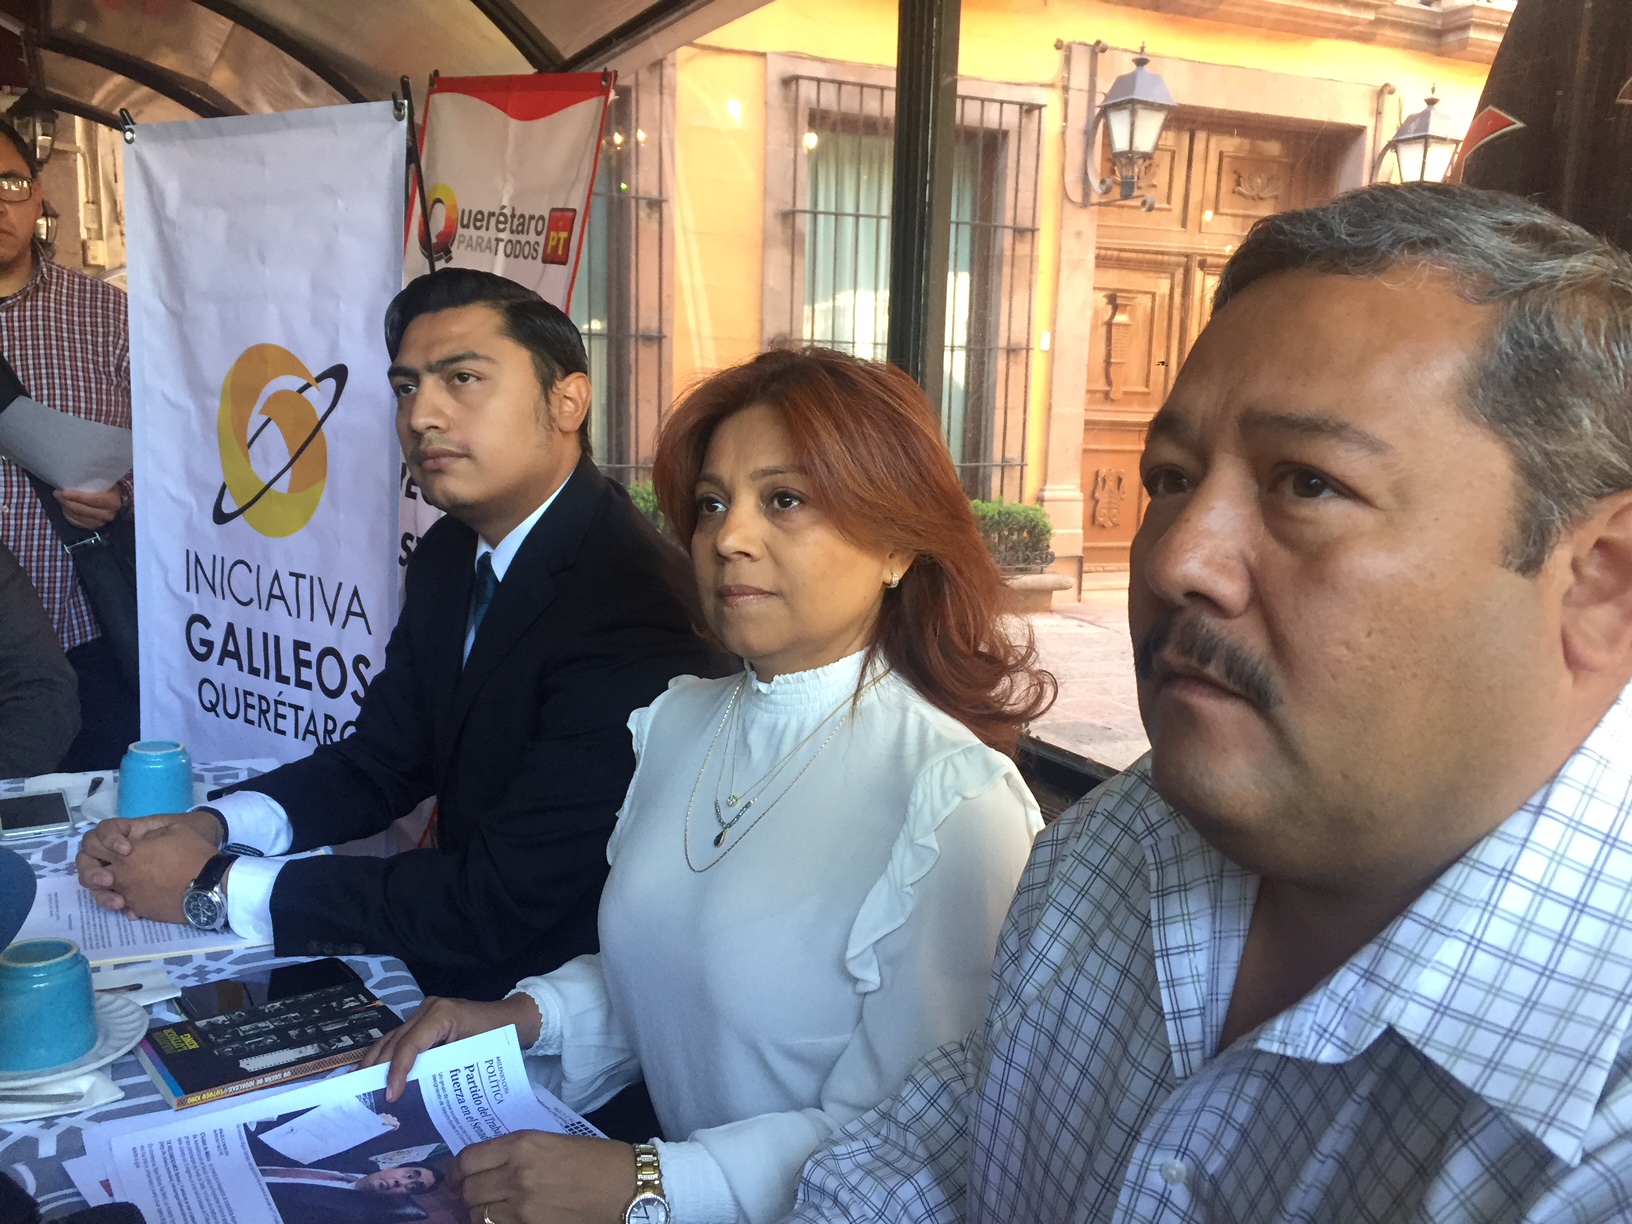  Grupos de izquierda de Querétaro buscan unirse rumbo a 2018